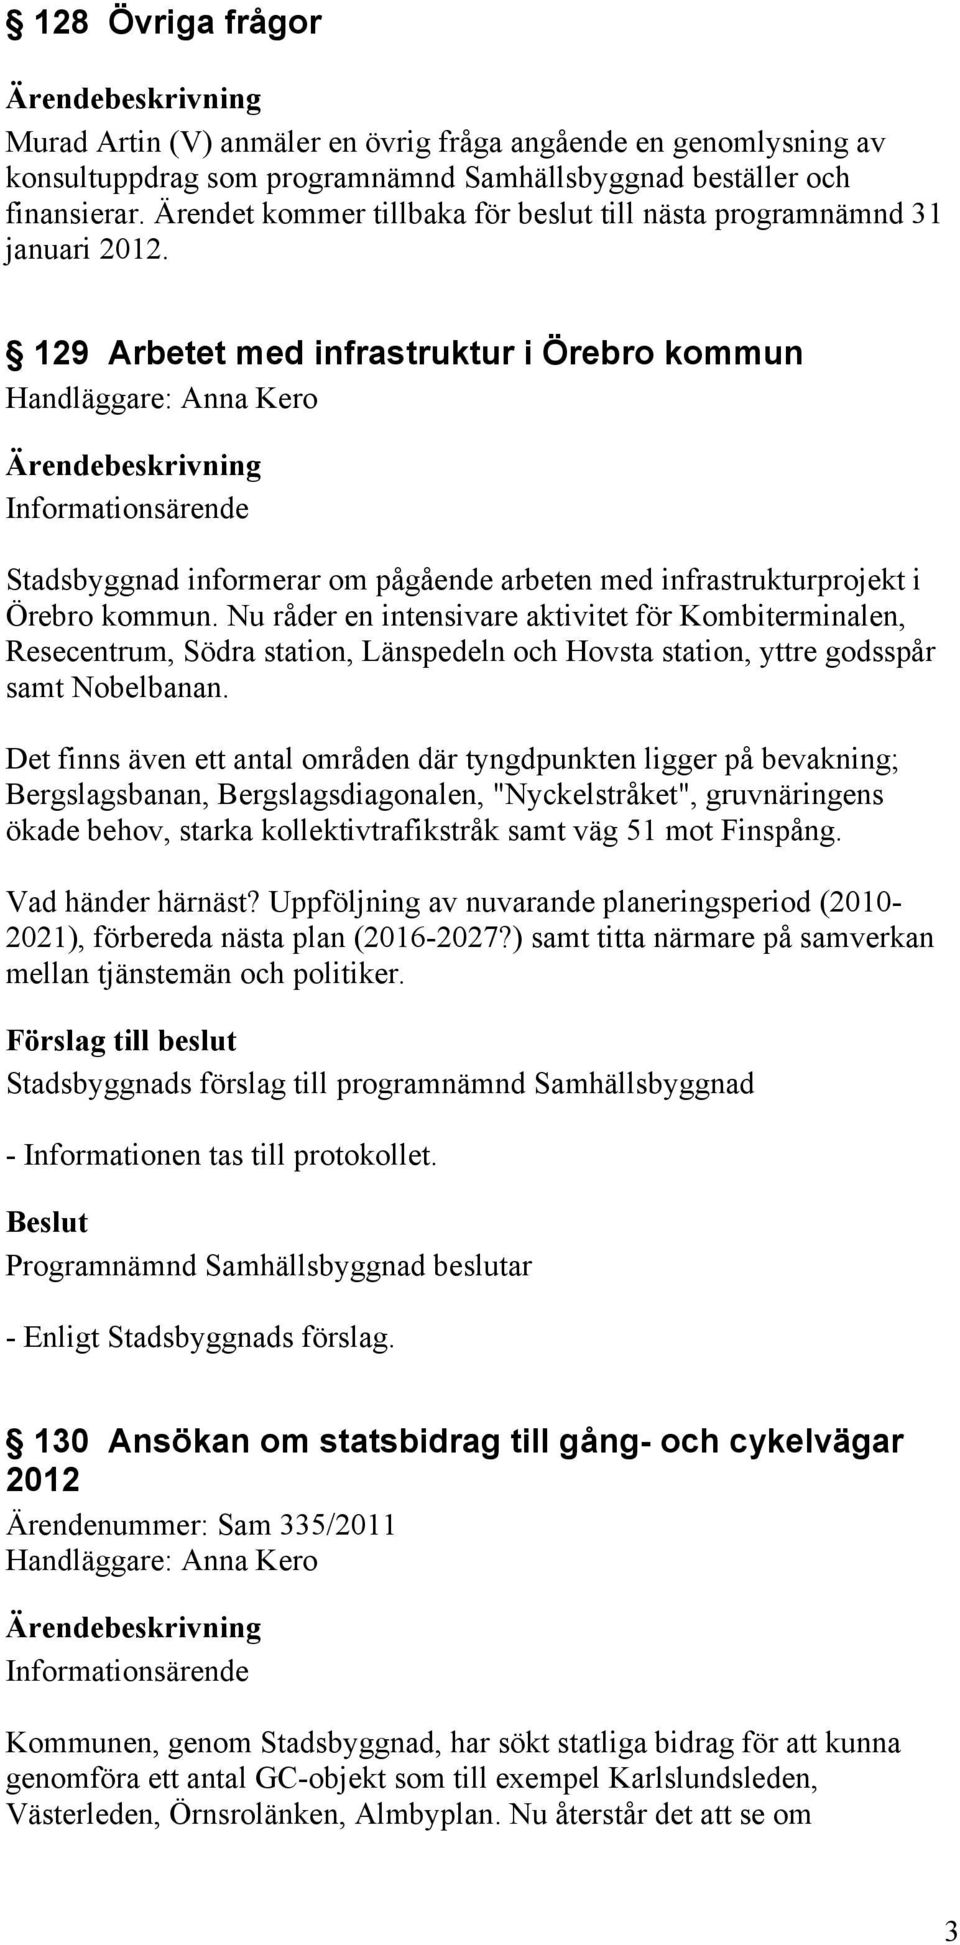 129 Arbetet med infrastruktur i Örebro kommun Handläggare: Anna Kero Informationsärende Stadsbyggnad informerar om pågående arbeten med infrastrukturprojekt i Örebro kommun.